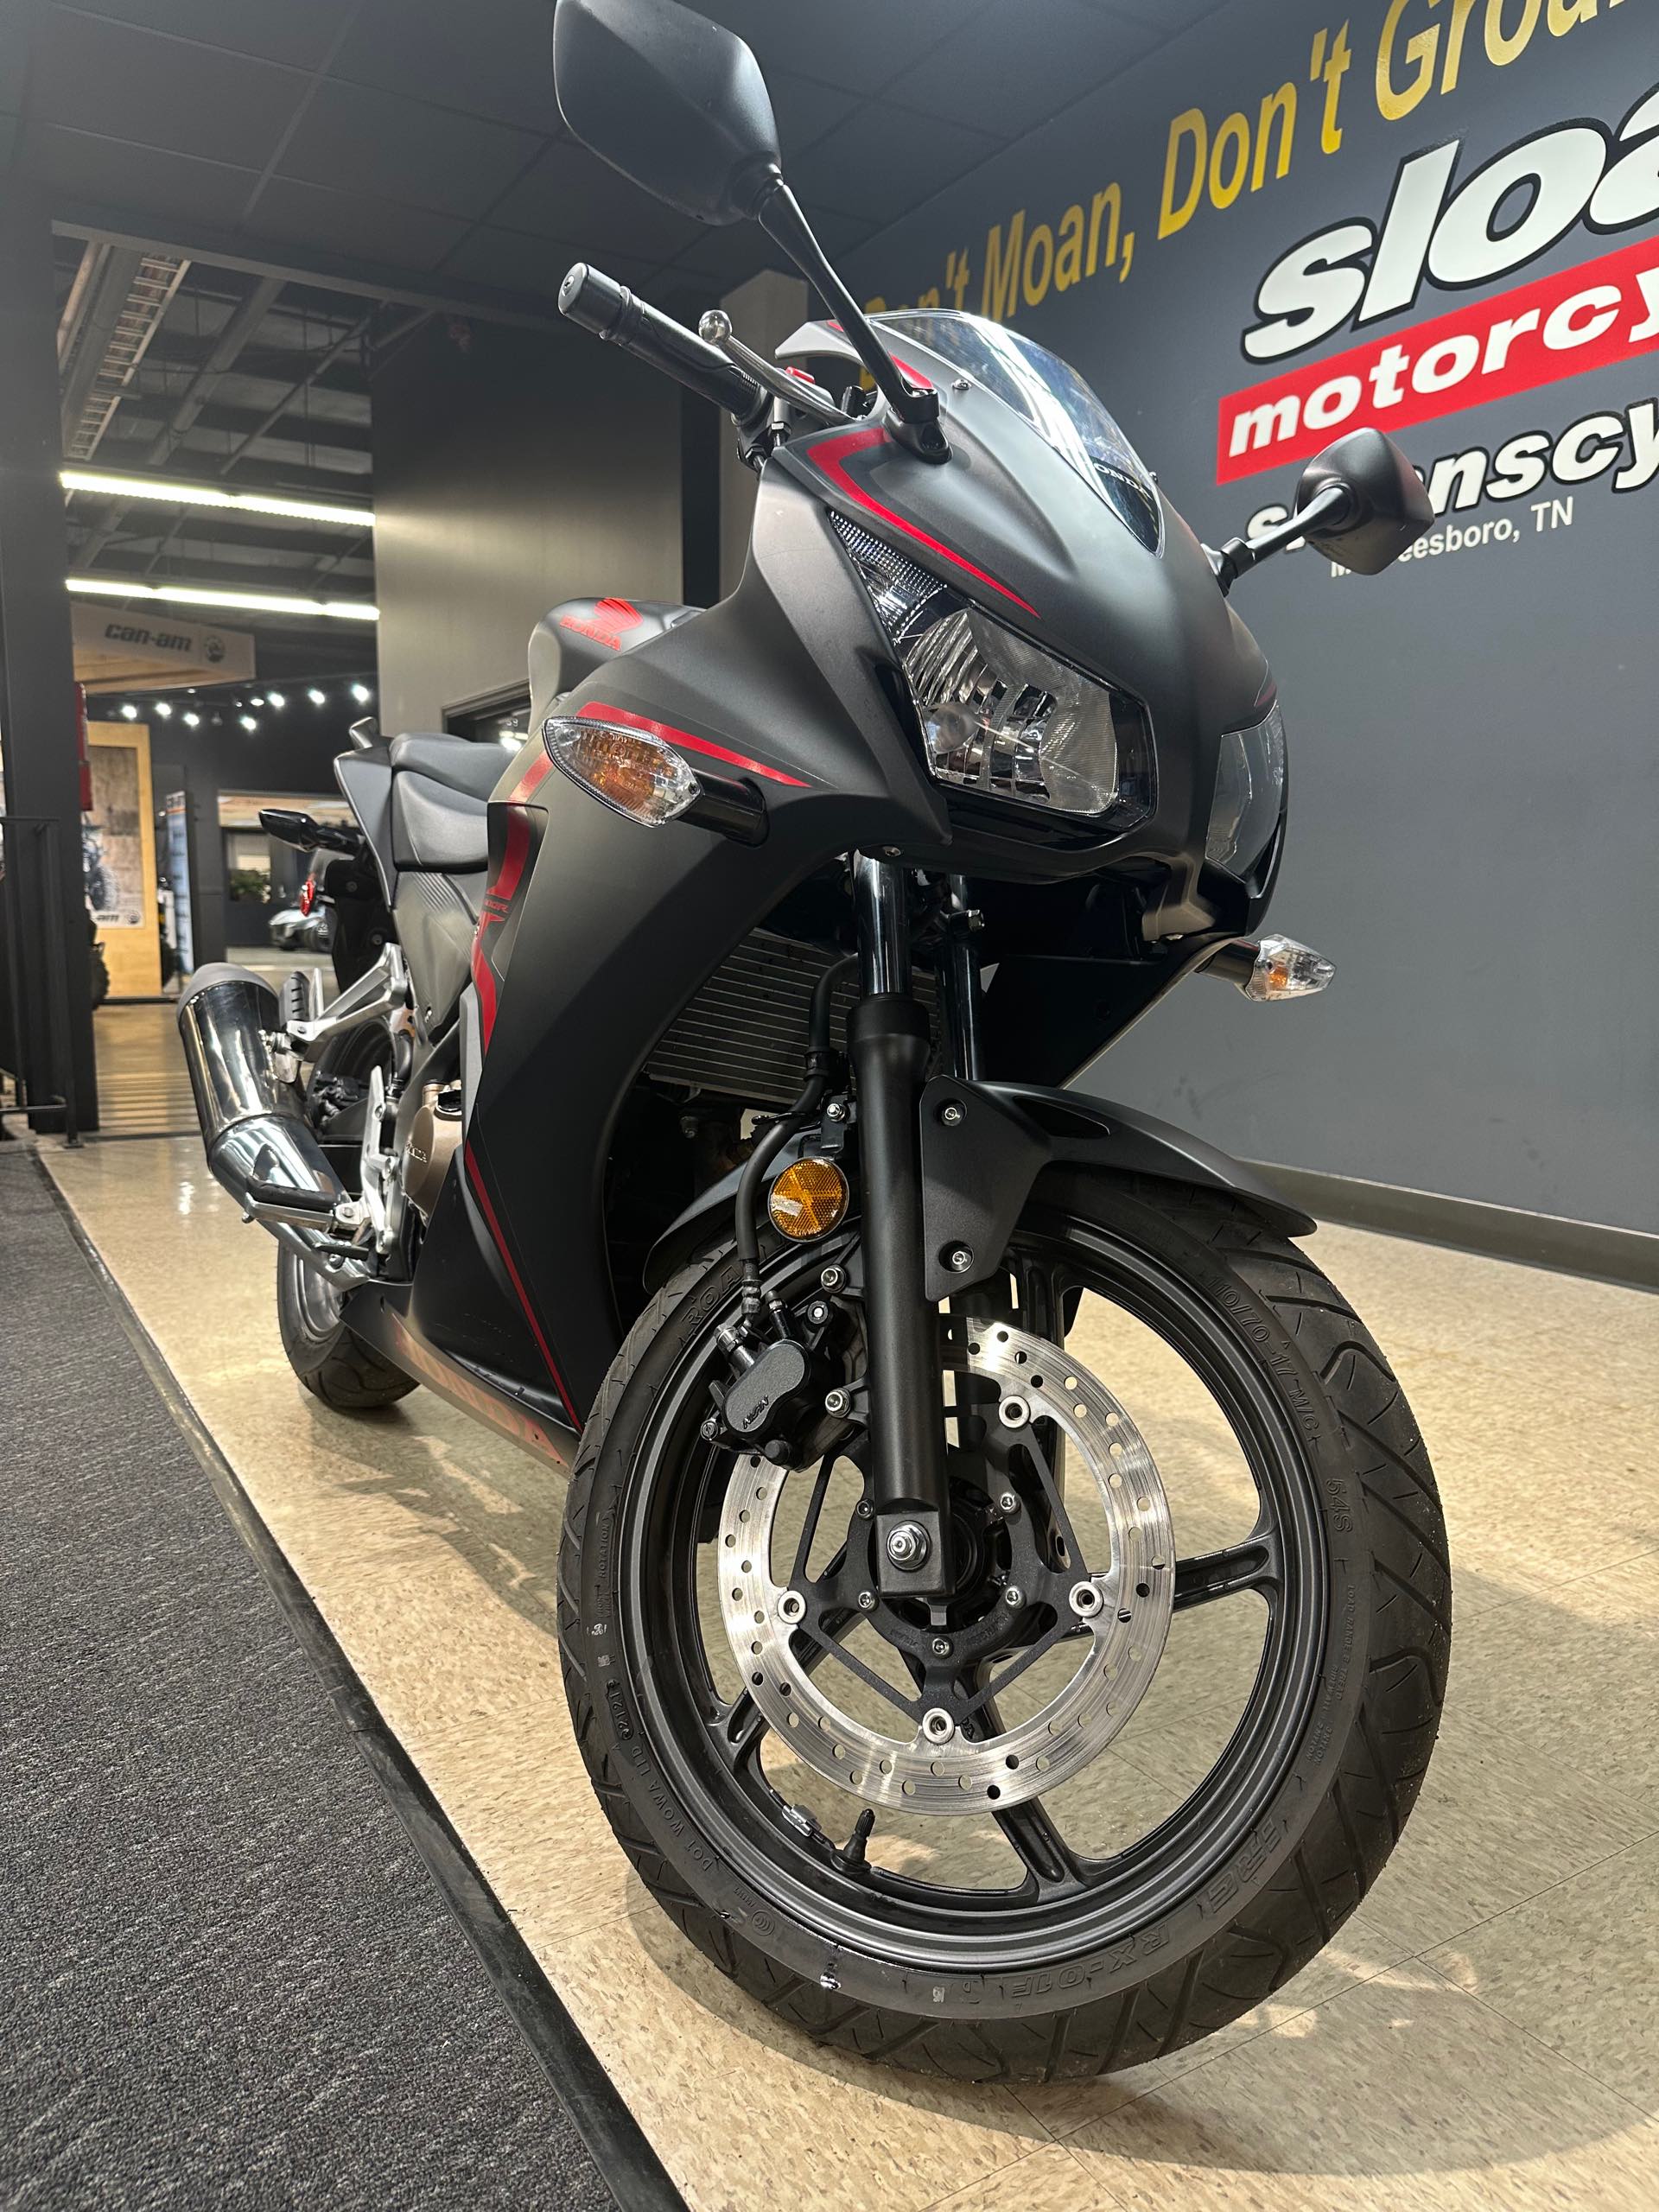 2021 Honda CBR300R Base at Sloans Motorcycle ATV, Murfreesboro, TN, 37129